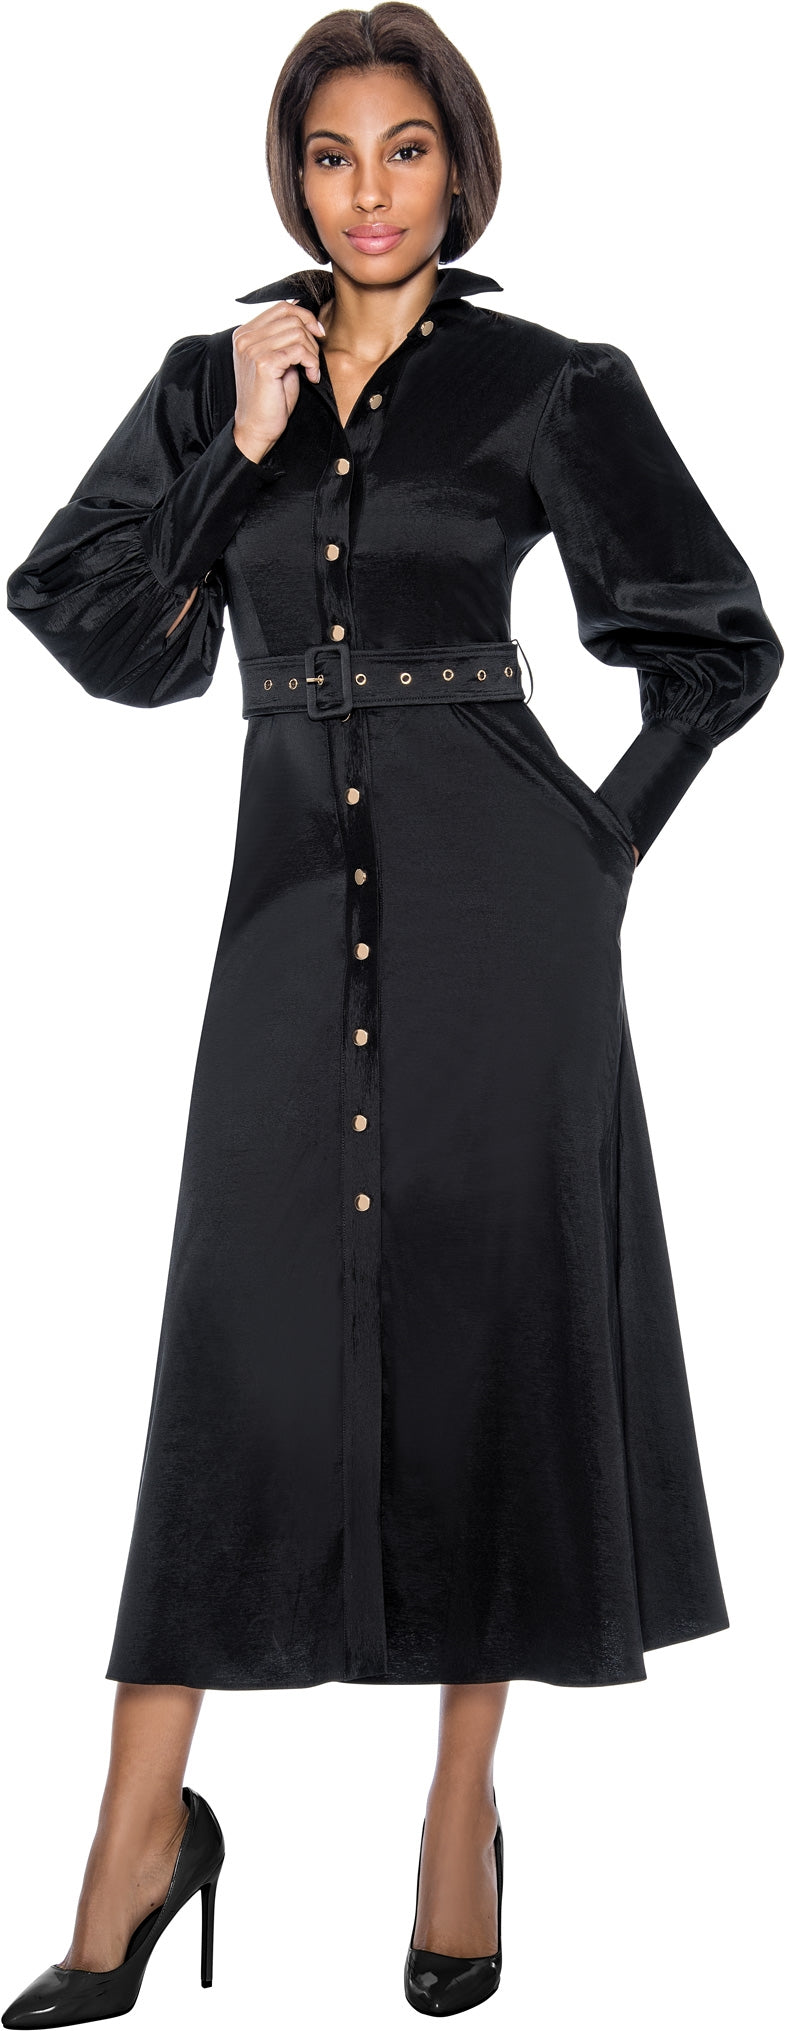 Terramina Church Dress 7055C-Black - Church Suits For Less